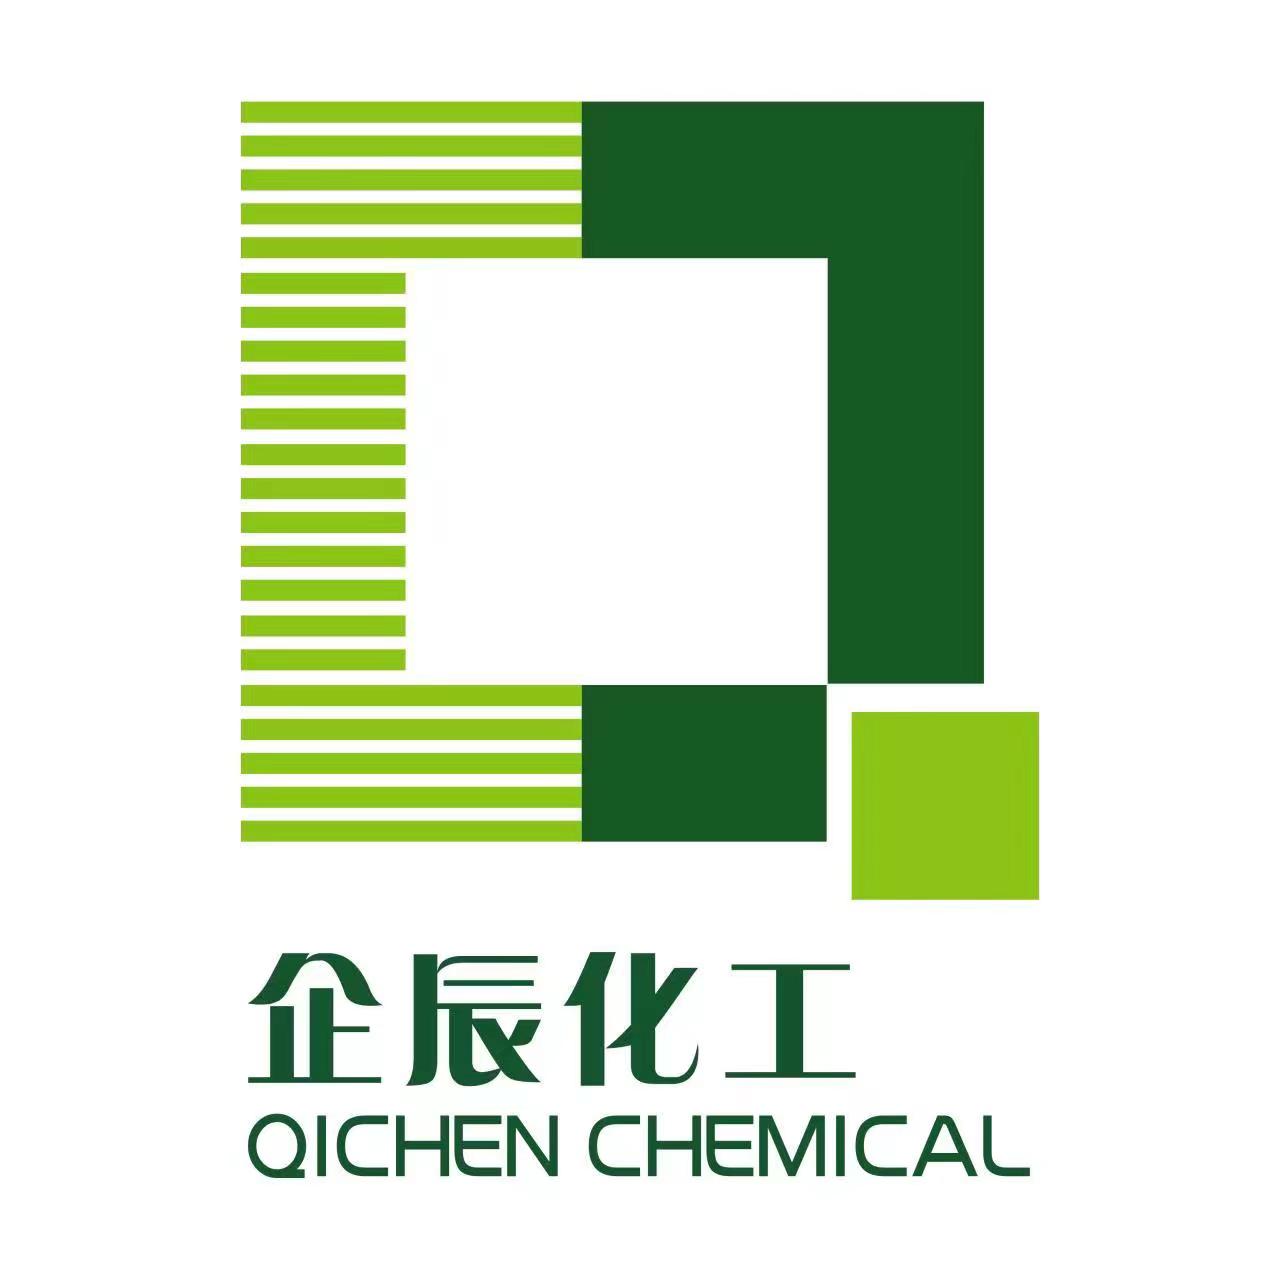 Qichenchemical(Tianjin)Co.,Ltd.